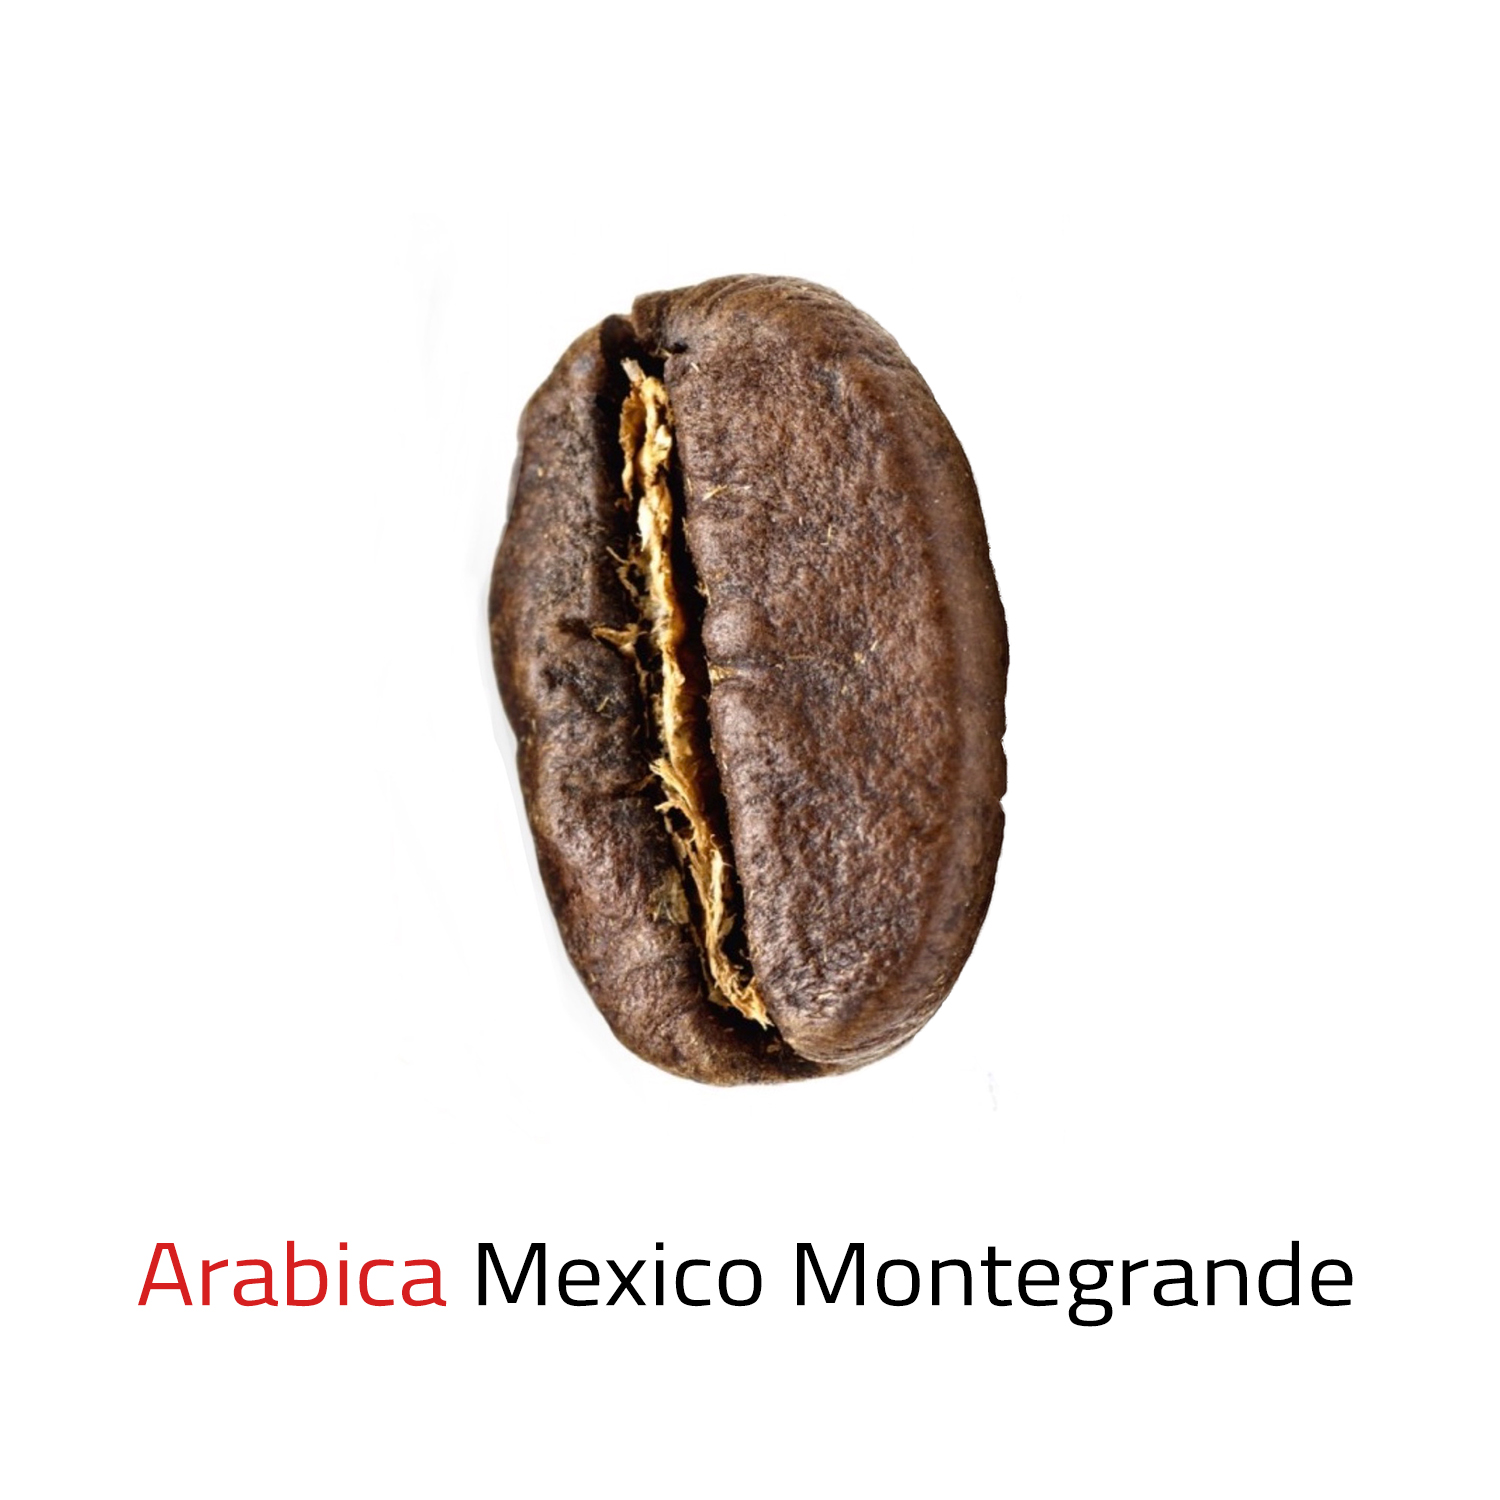 Čerstvě pražená káva zrnková Arabica Mexico Montegrande